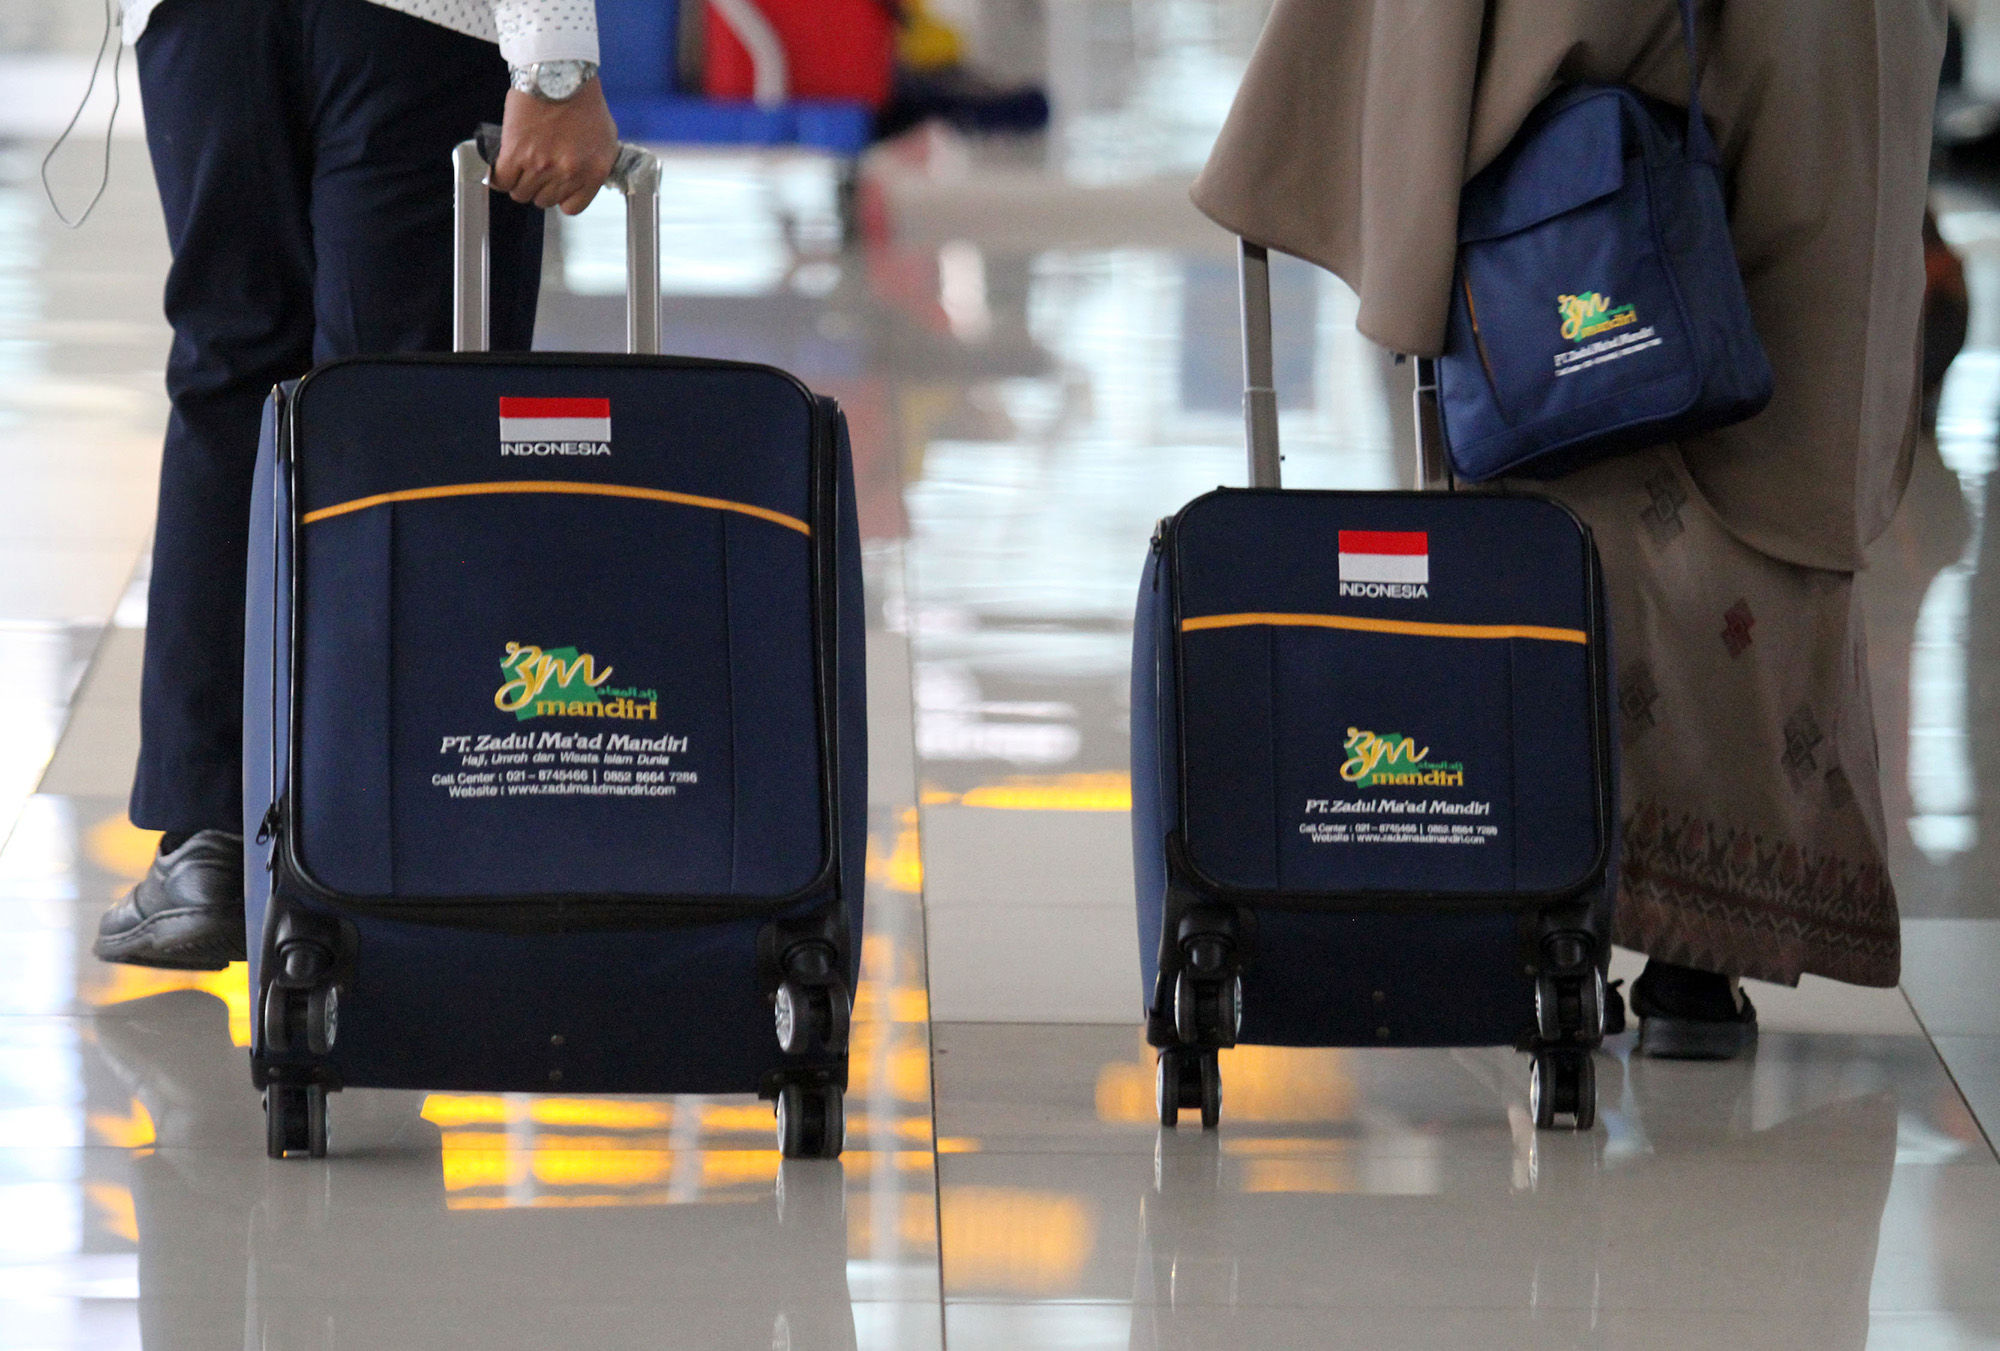 <p>Sejumlah calon jamaah umrah sebelum bertolak ke Arab Saudi dari Terminal 3 Bandara Soekarno Hatta, Tangerang, Banten, Minggu, 1 November 2020. Foto : Panji Asmoro/TrenAsia</p>
